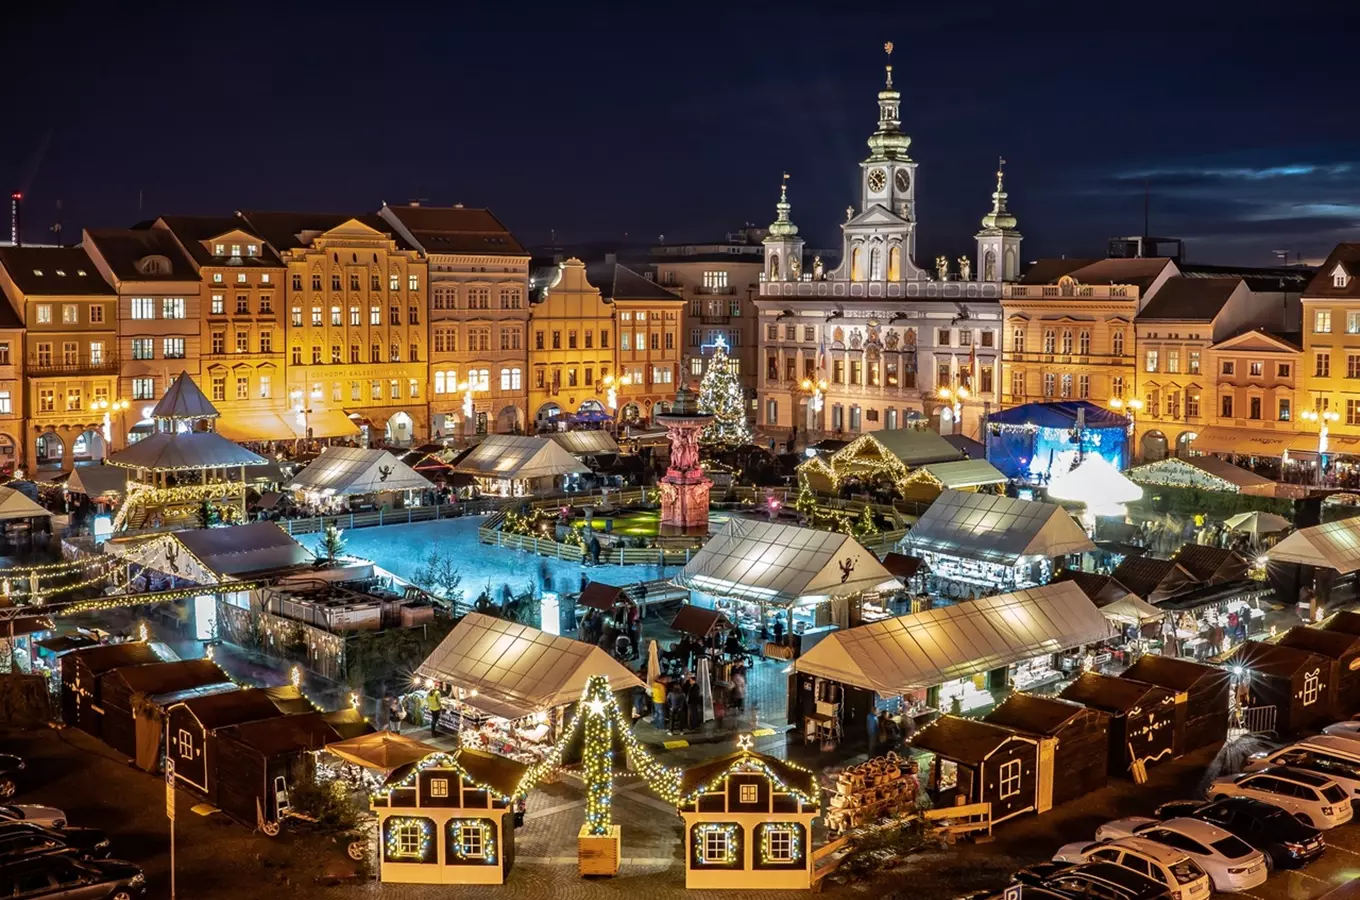 Nejhezčí vánoční trhy 2023 jsou podle ankety v Českých Budějovicích